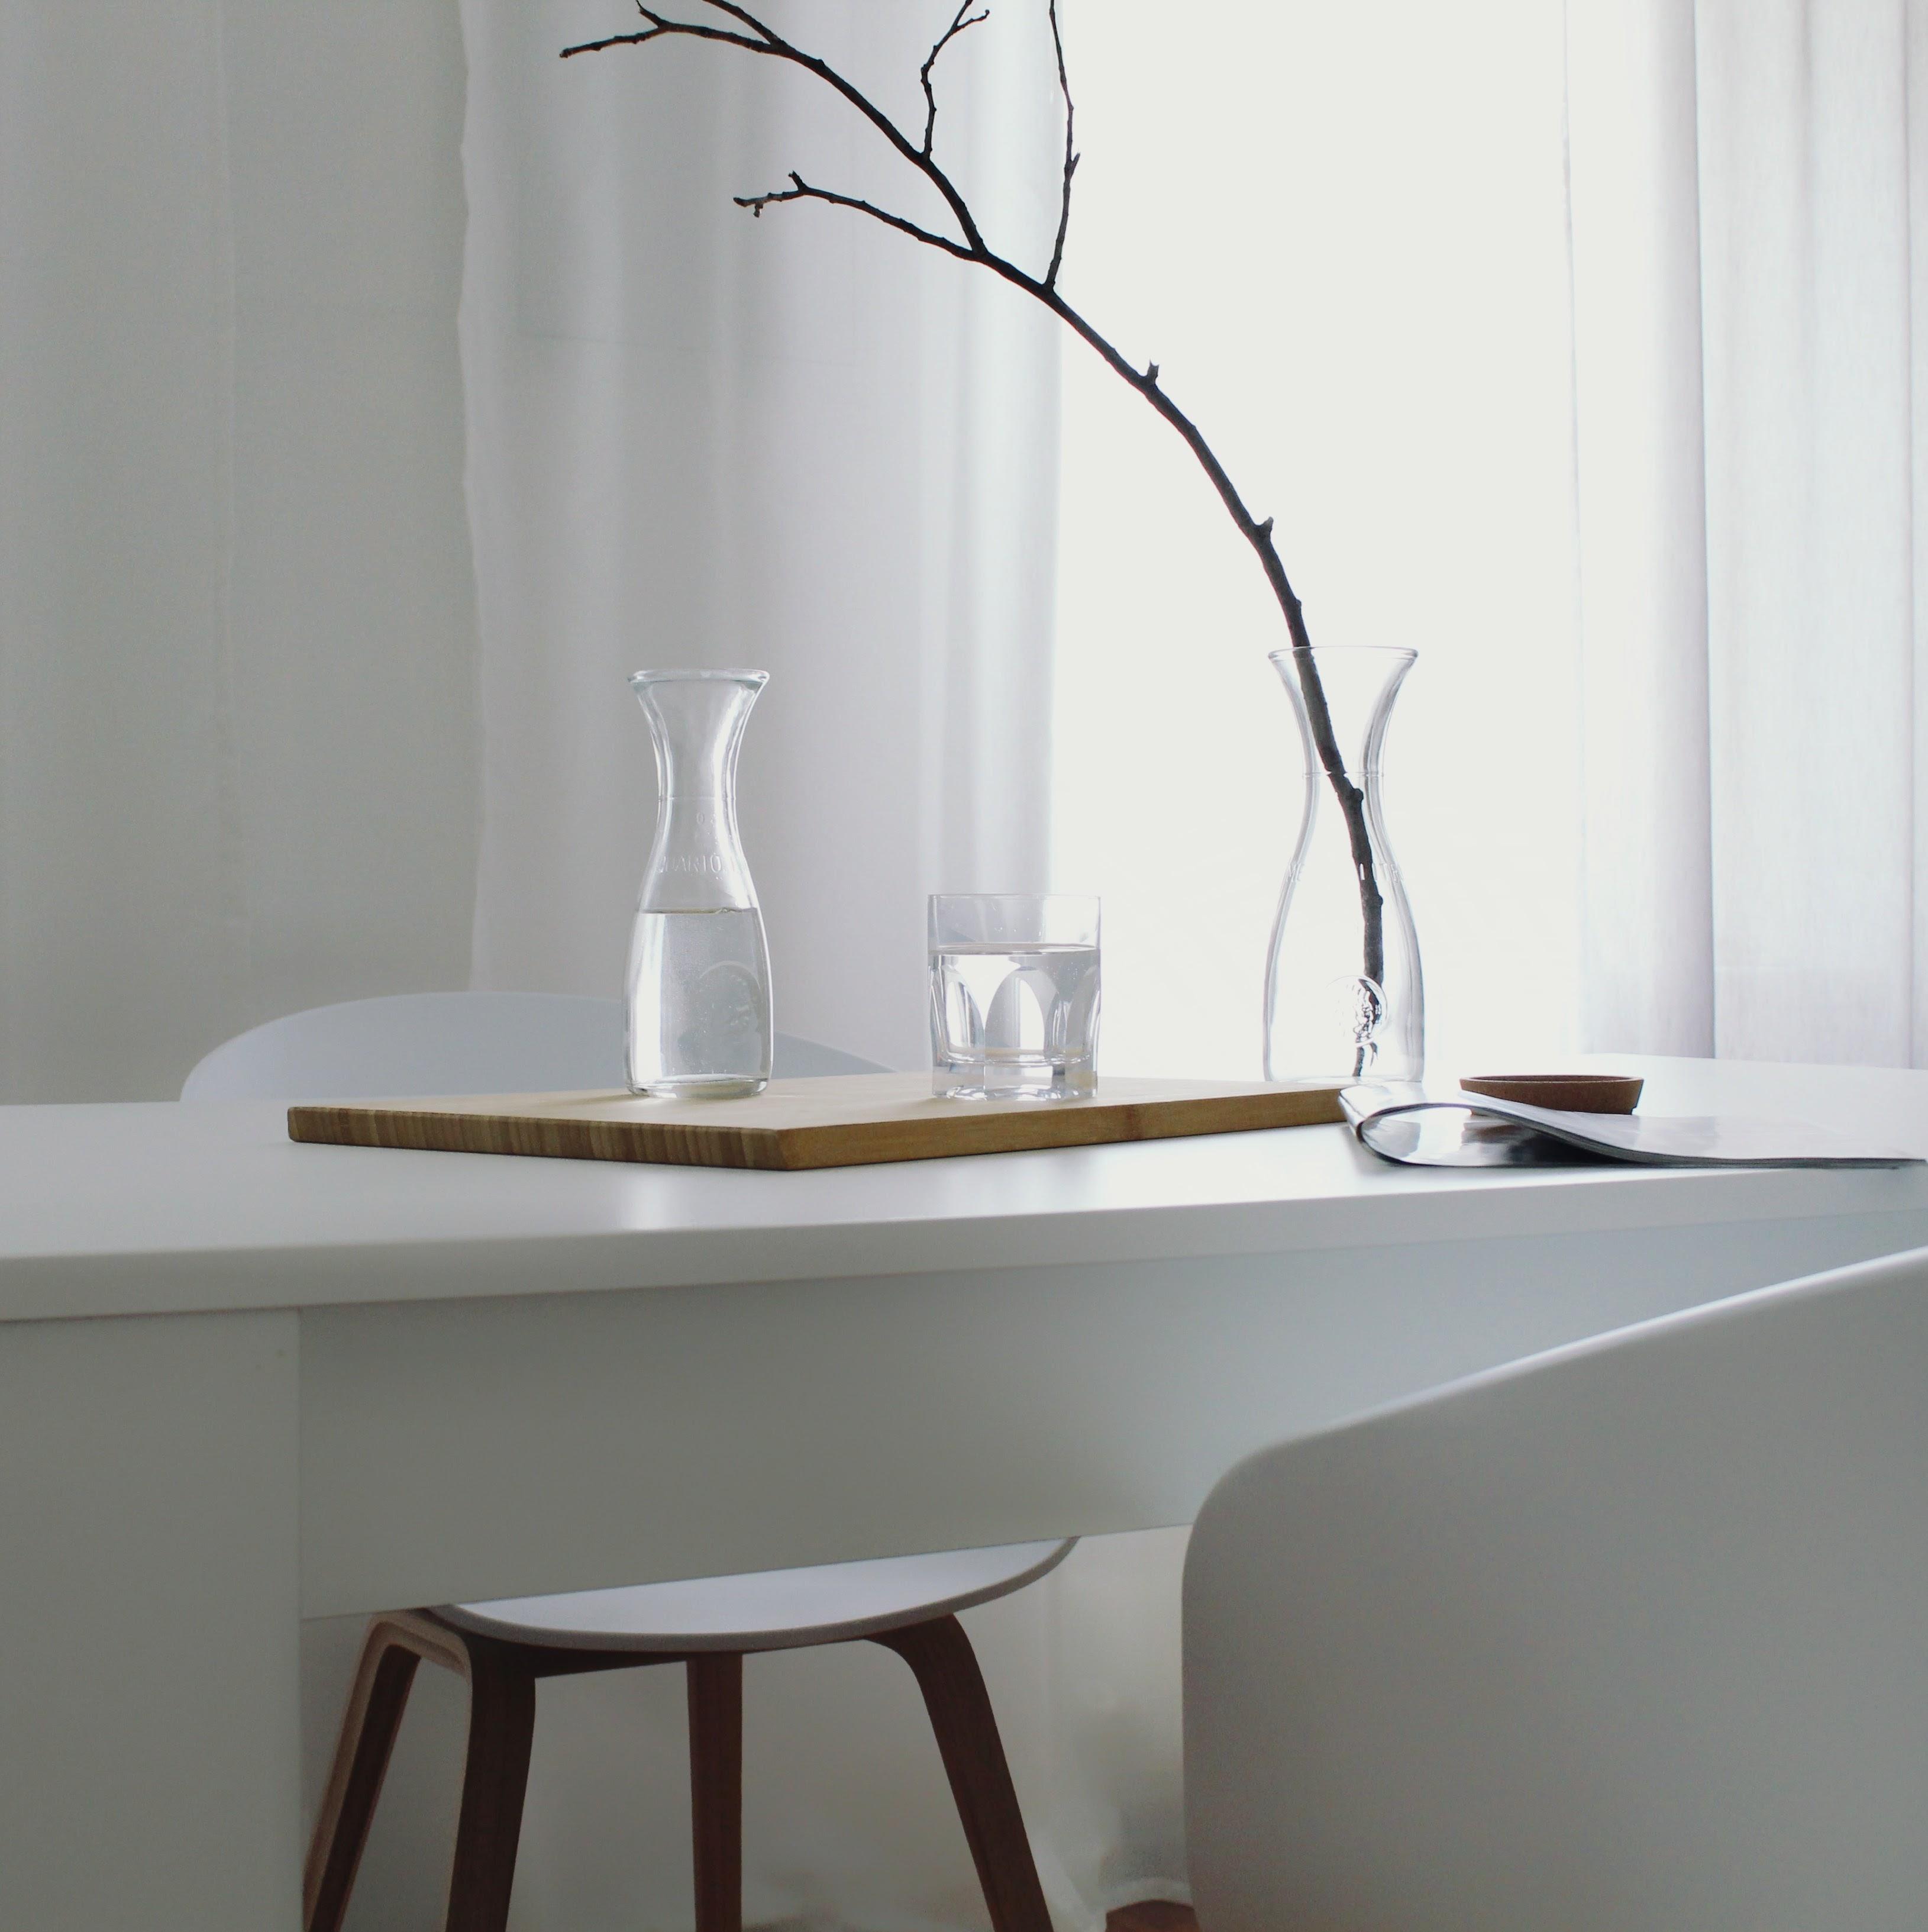 Klarheit #minimalism #interior #skandistyle #simplicity #weiss #hay #aboutachair 